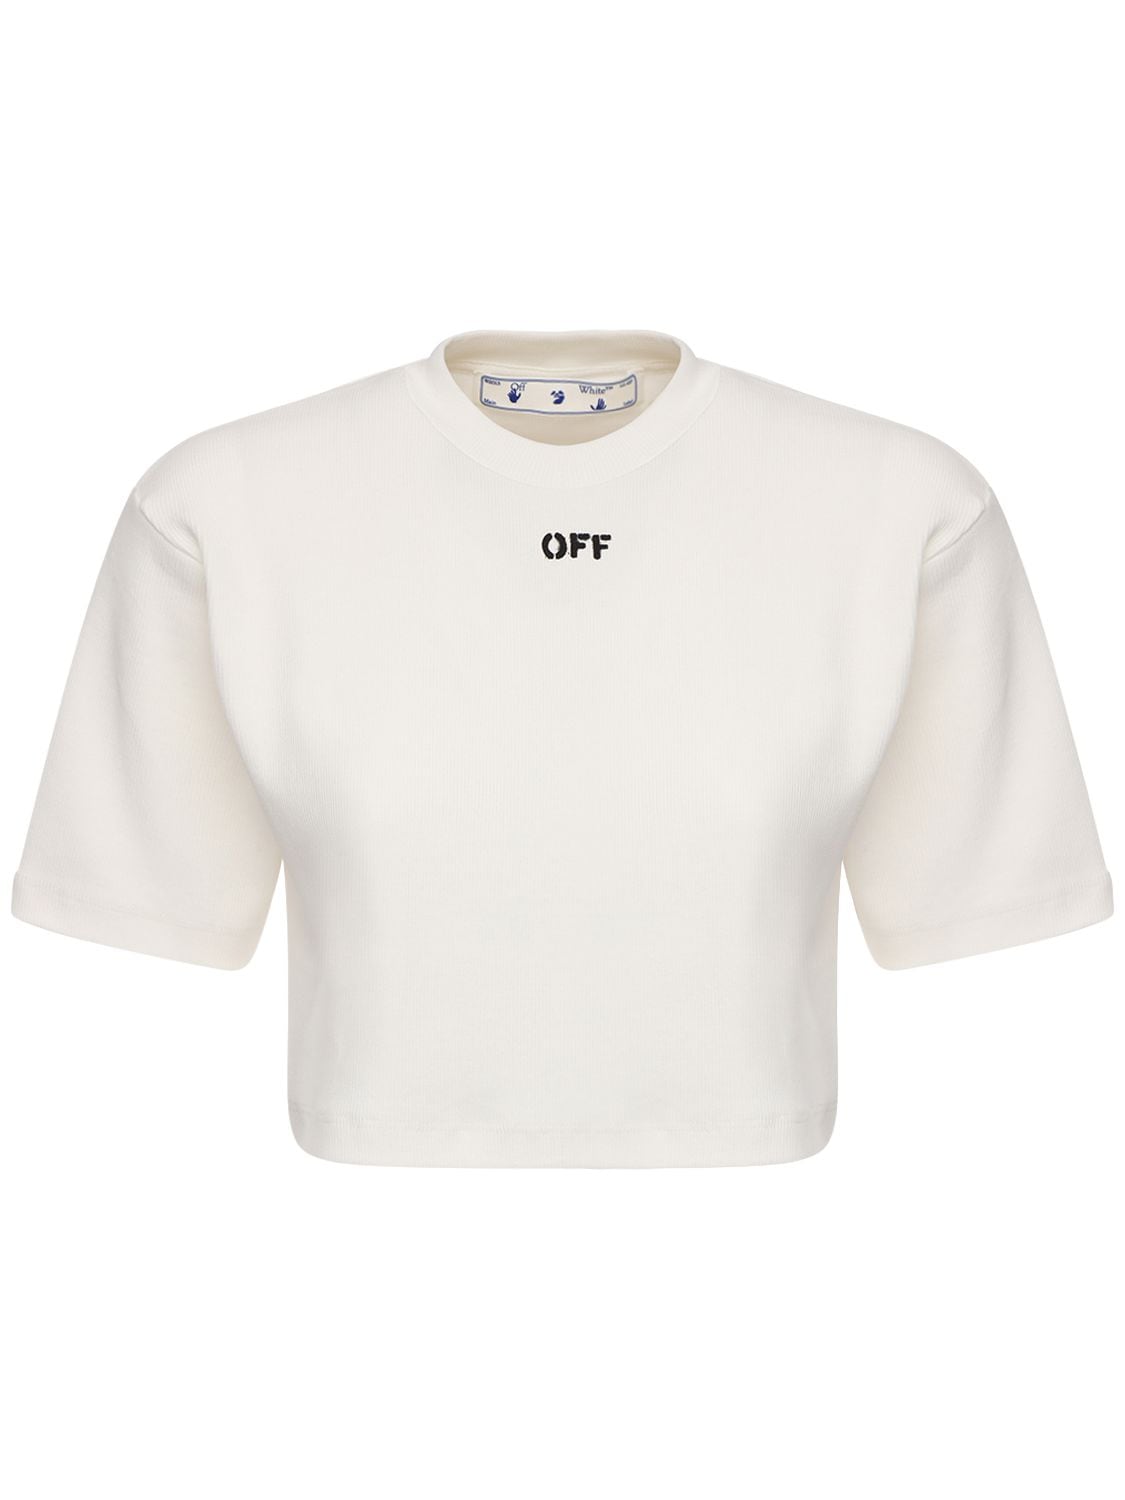 Off Cotton Blend Jersey T-shirt